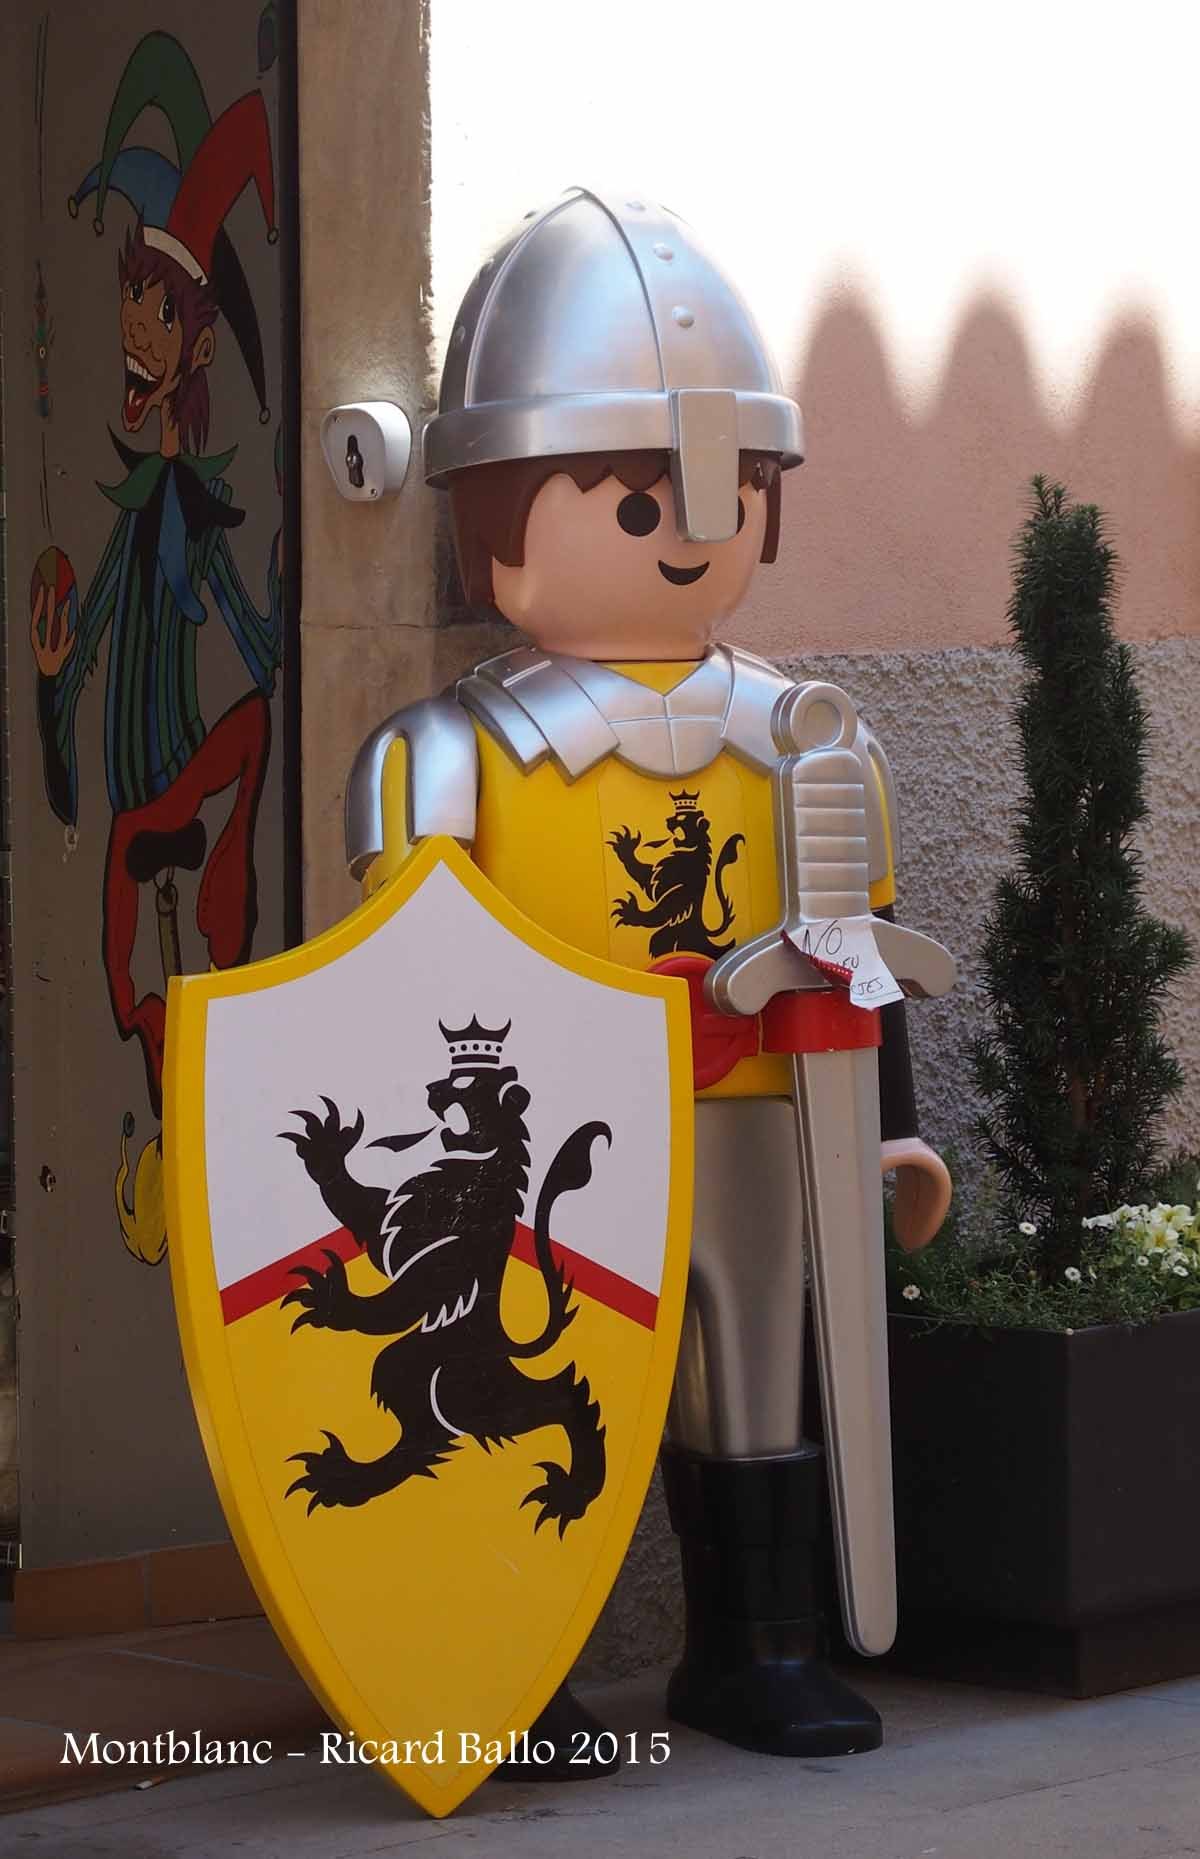 Església de Sant Francesc – Montblanc - Un personatge de Lego, situat al davant de l'aparador d'una botiga, amb motiu de celebrar-se el festival de Lego de Montblanc.